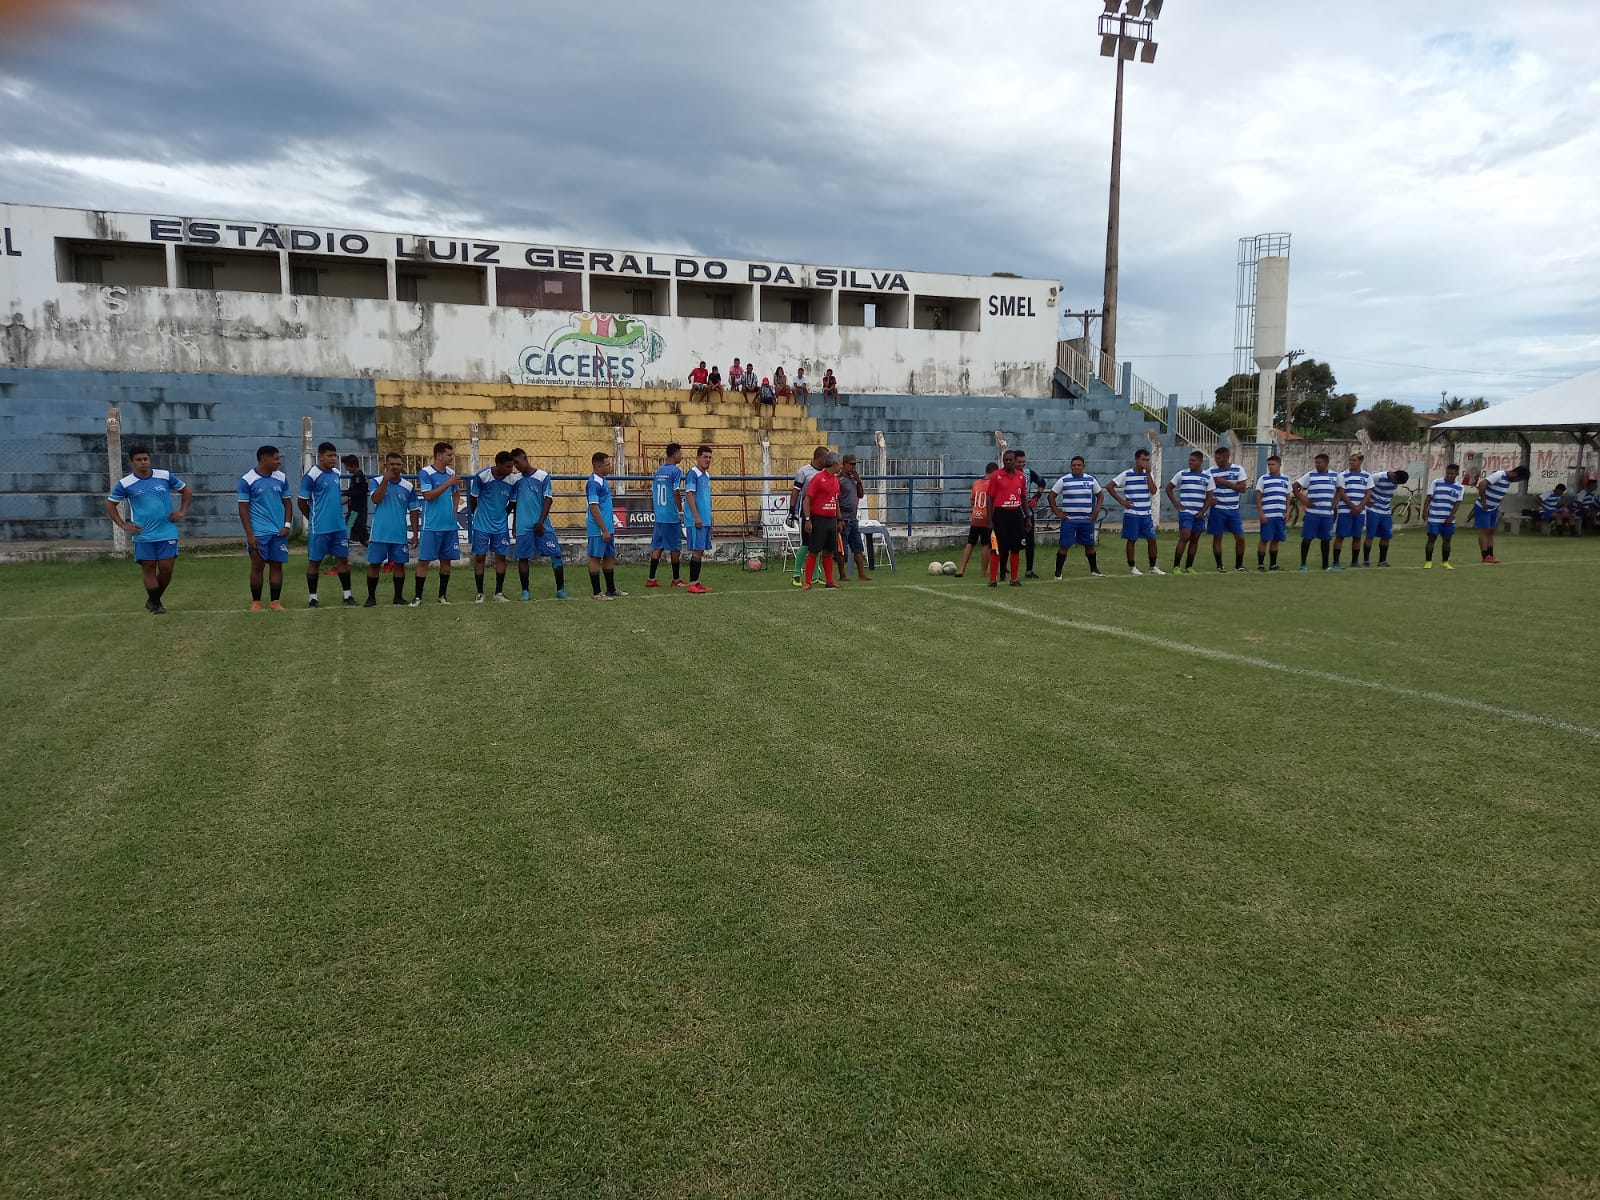 Trs jogos marcam 2 rodada do Campeonato Princesinha do Paraguai neste fim de semana